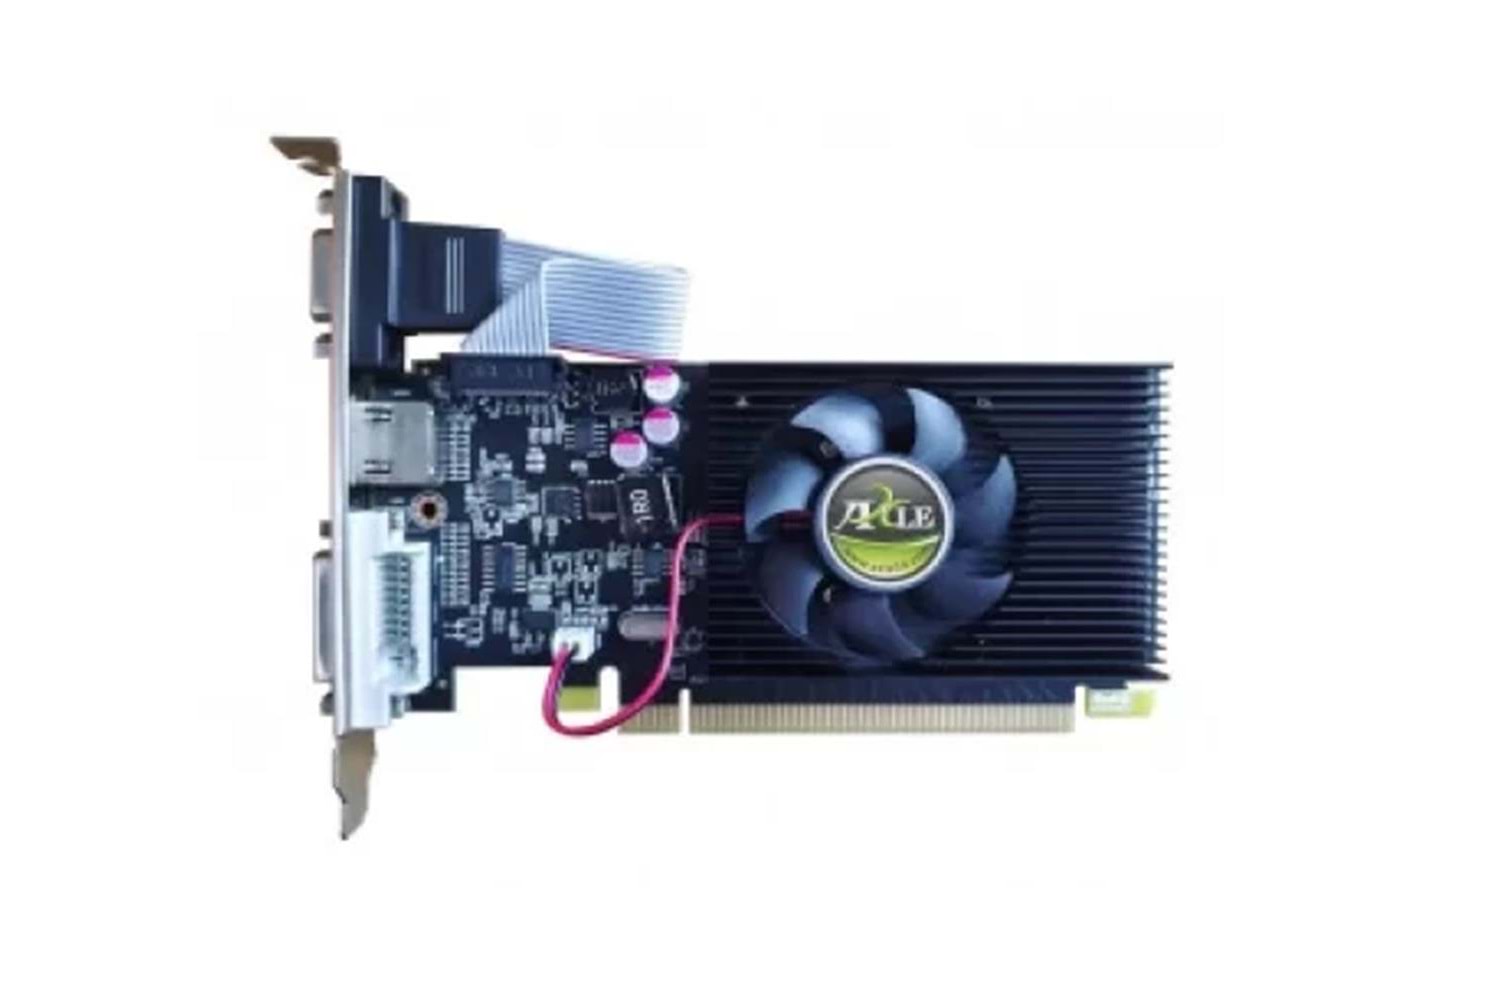 Axle R5 220 2GB DDR3 64Bit (AX-R5 220-2GD3P4CDIL) Ekran Kartı